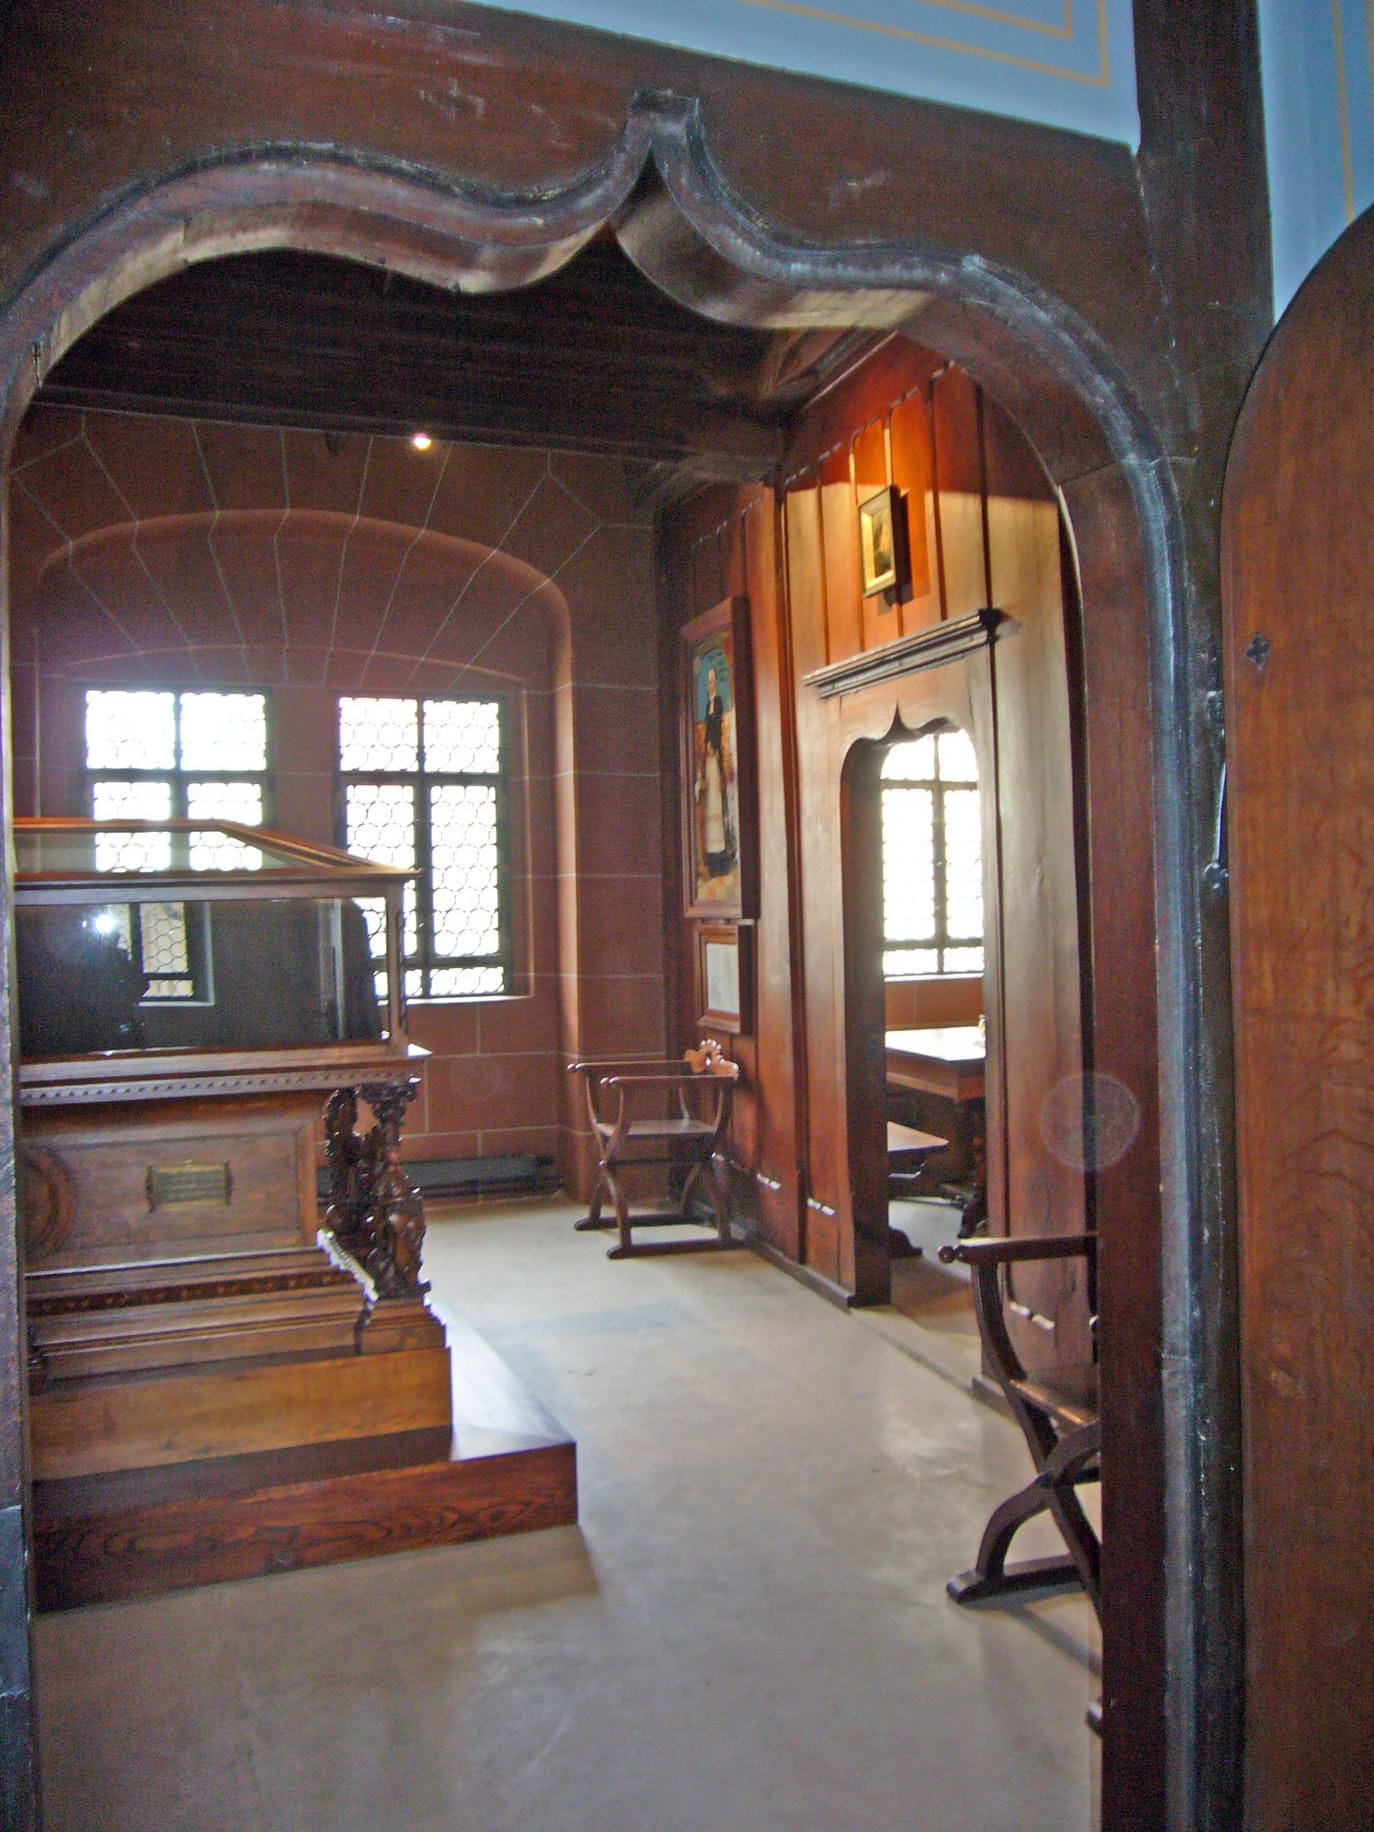 Luthers Sterbezimmer in Eisleben